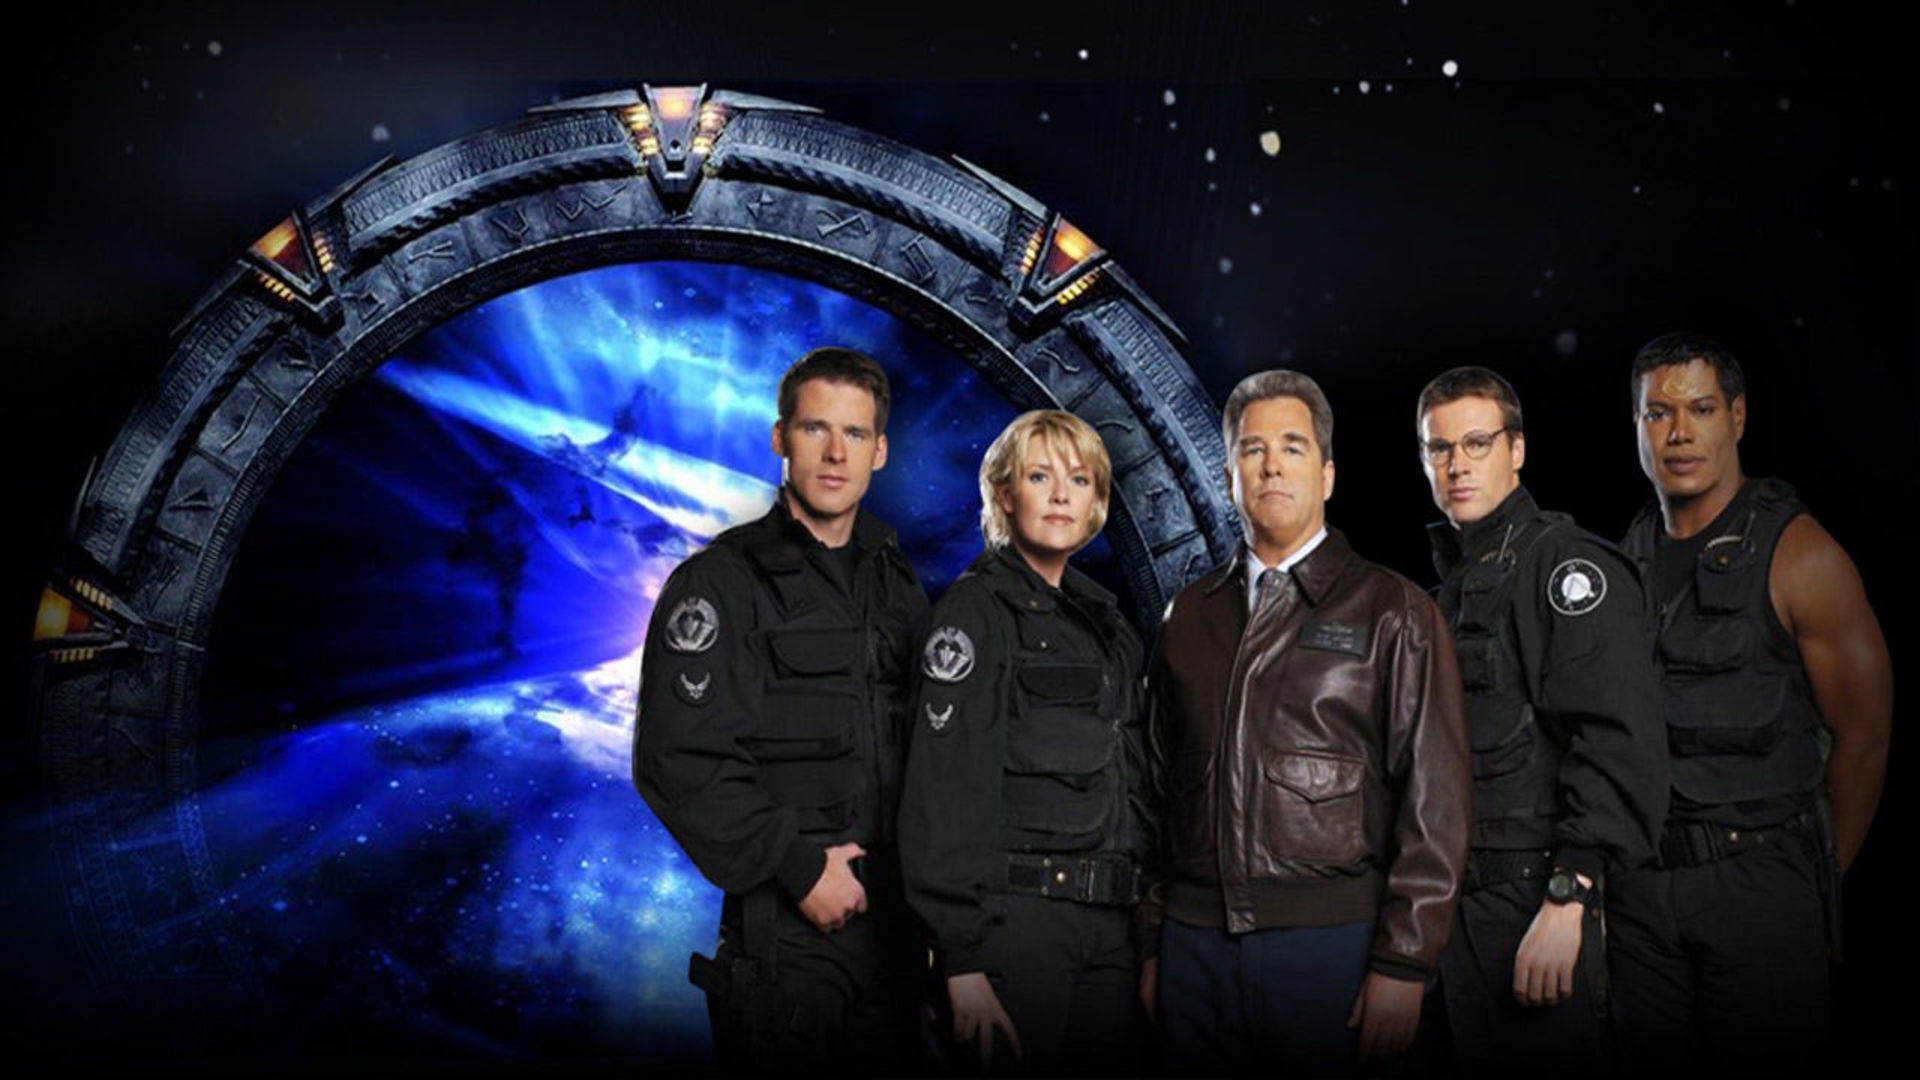 Карелин лисицин покоритель звездных врат. Звездные врата (Stargate). Sg1 Звёздные врата Вселенная. Звёздные врата SG-1 корабли. Stargate sg1.